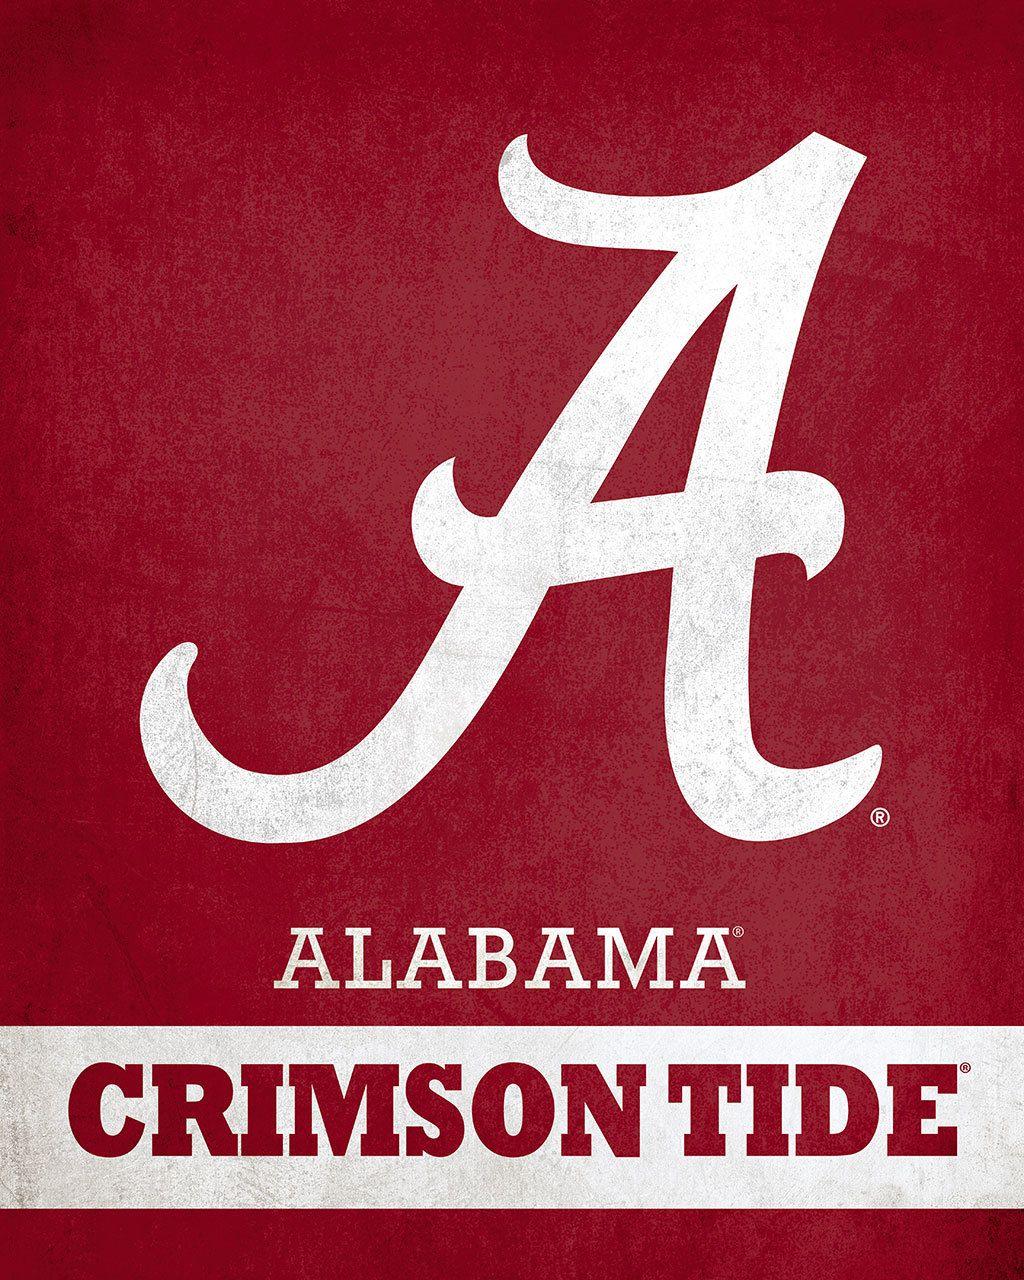 Alabama Crimson Tide Logo - Alabama Crimson Tide Logo